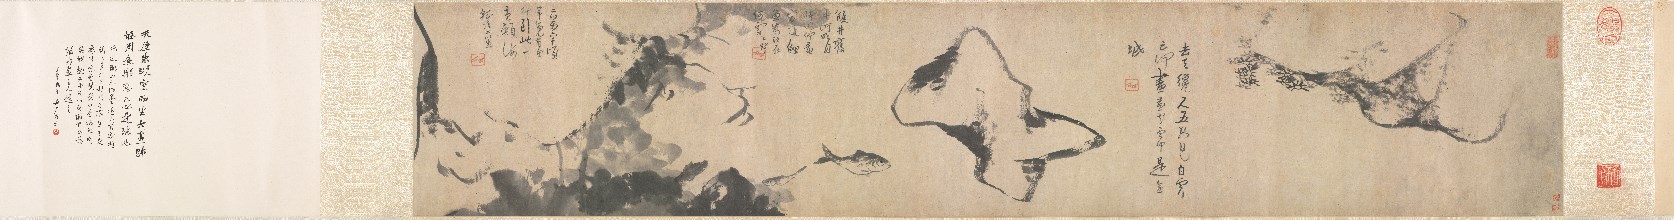 Fish and Rocks, mid- to late 1600s. Creator: Bada Shanren (Chinese, 1626-1705).